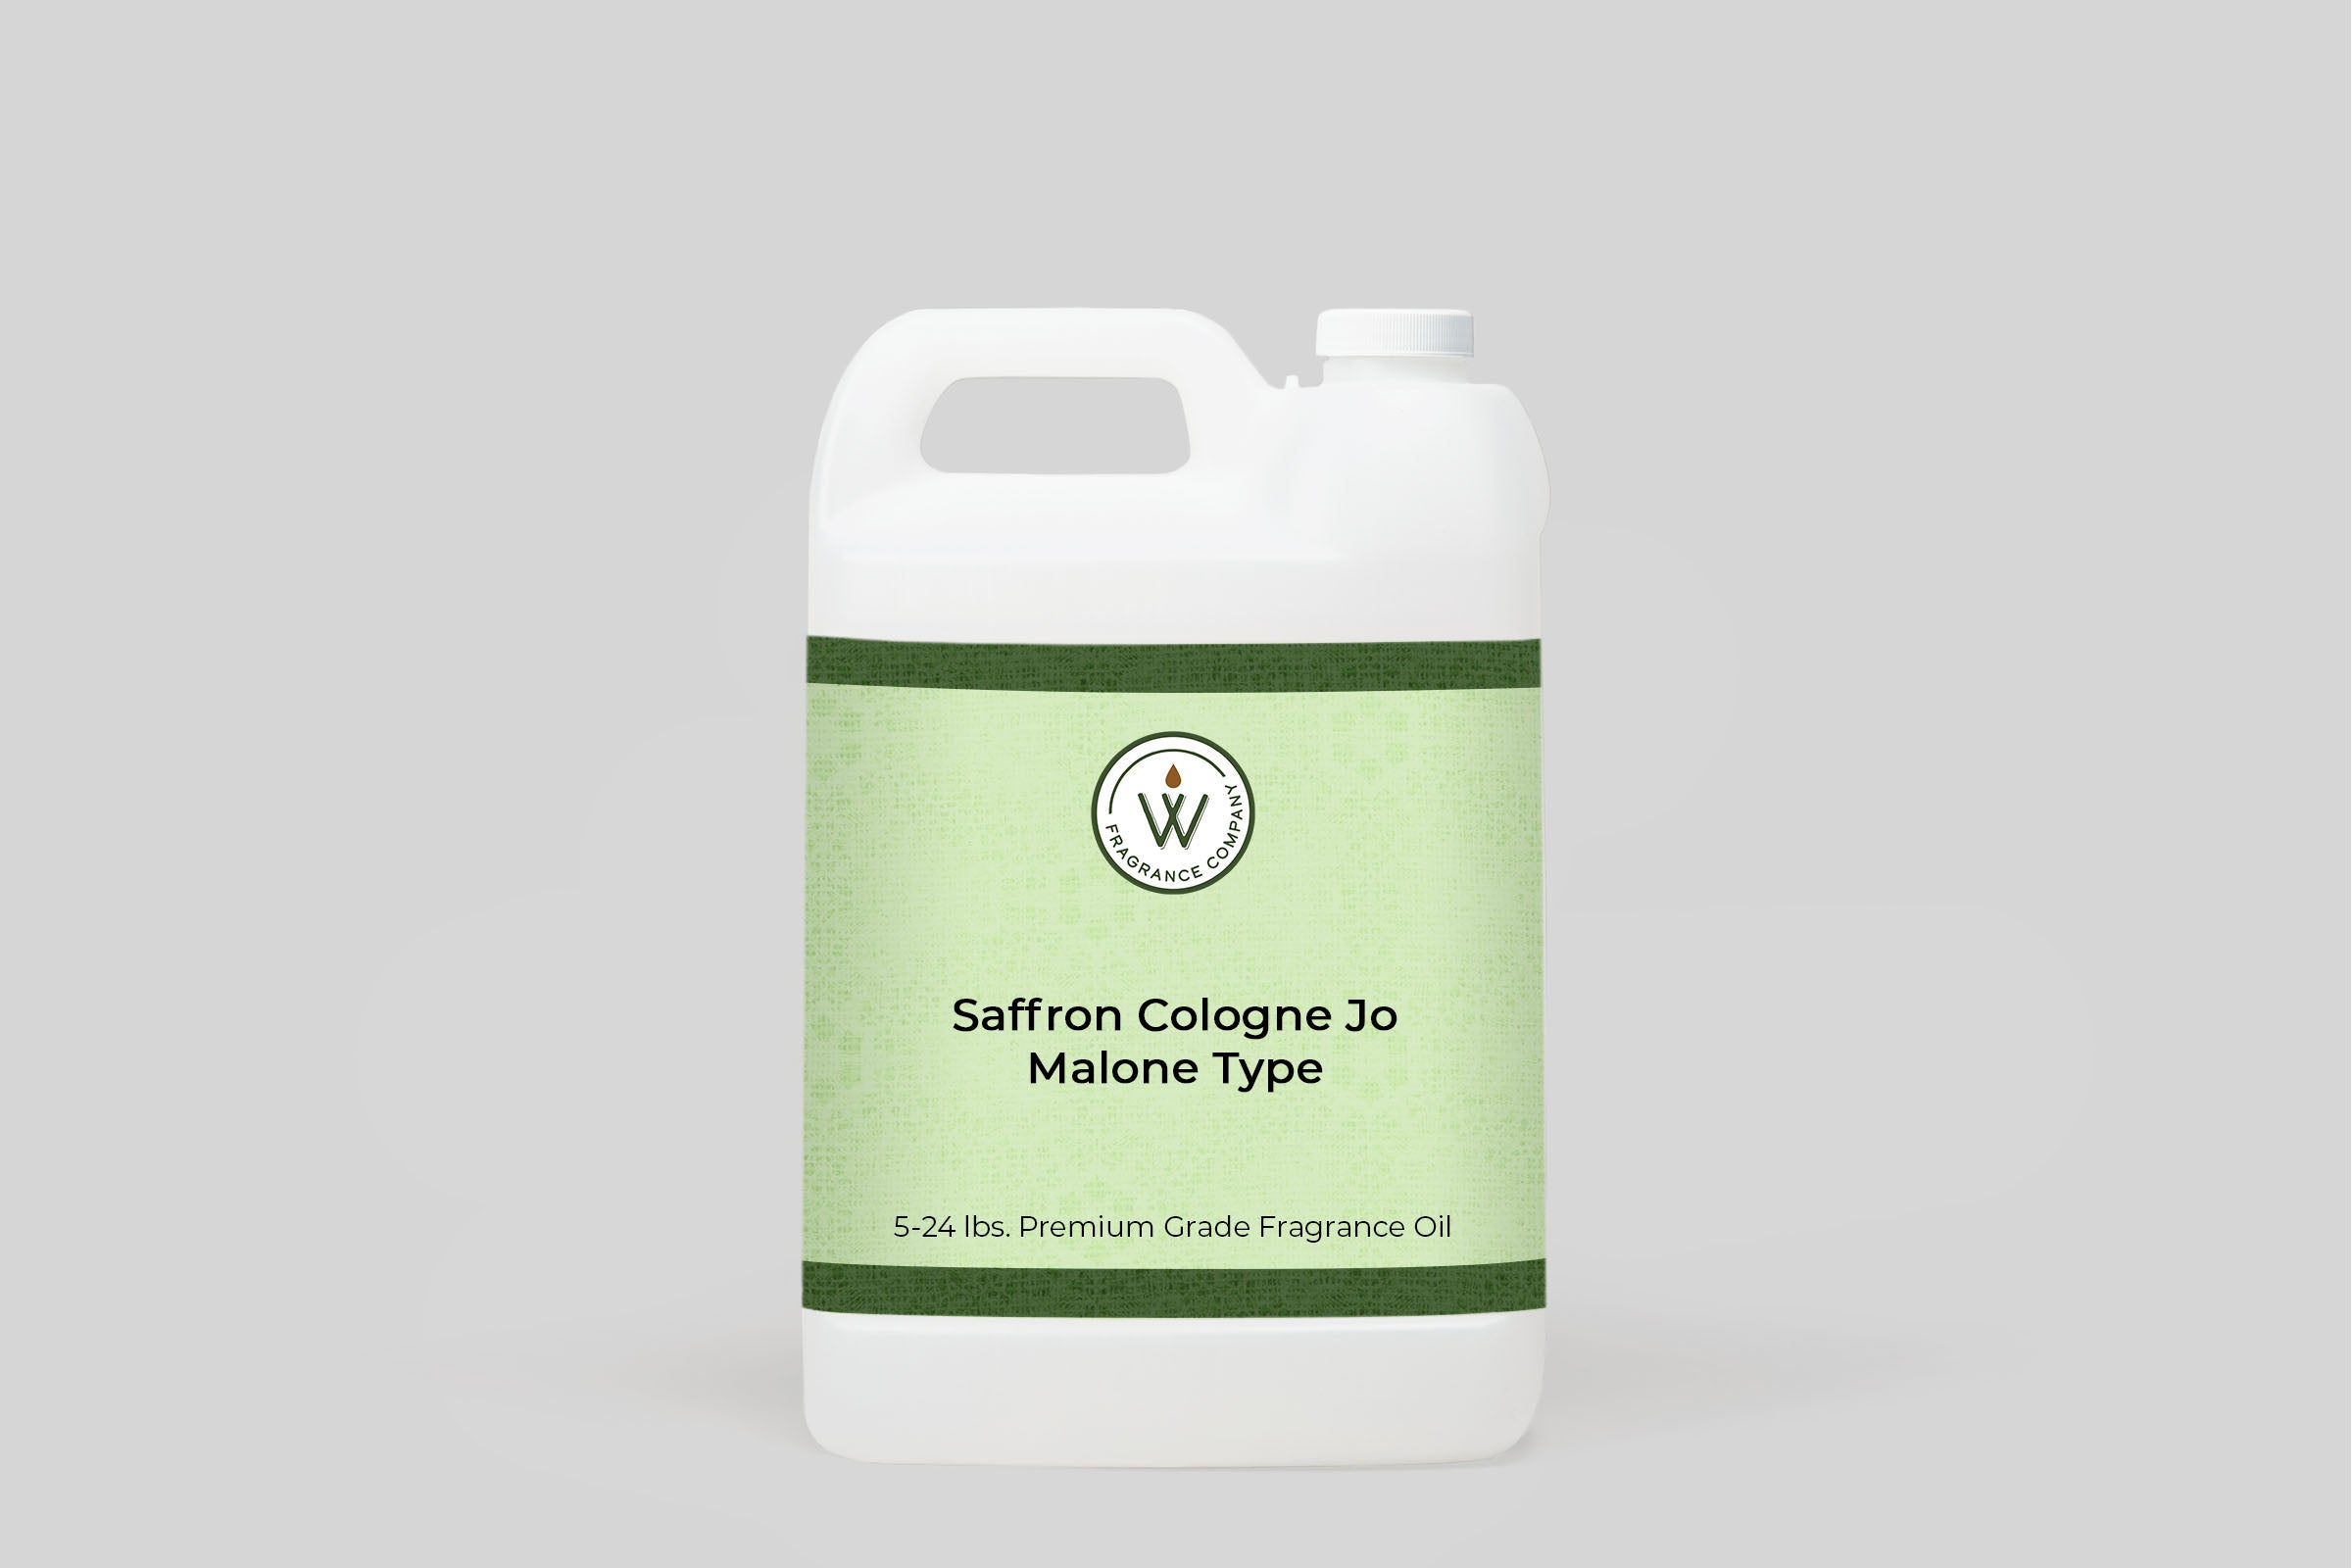 Saffron Cologne Jo Malone Type Fragrance Oil